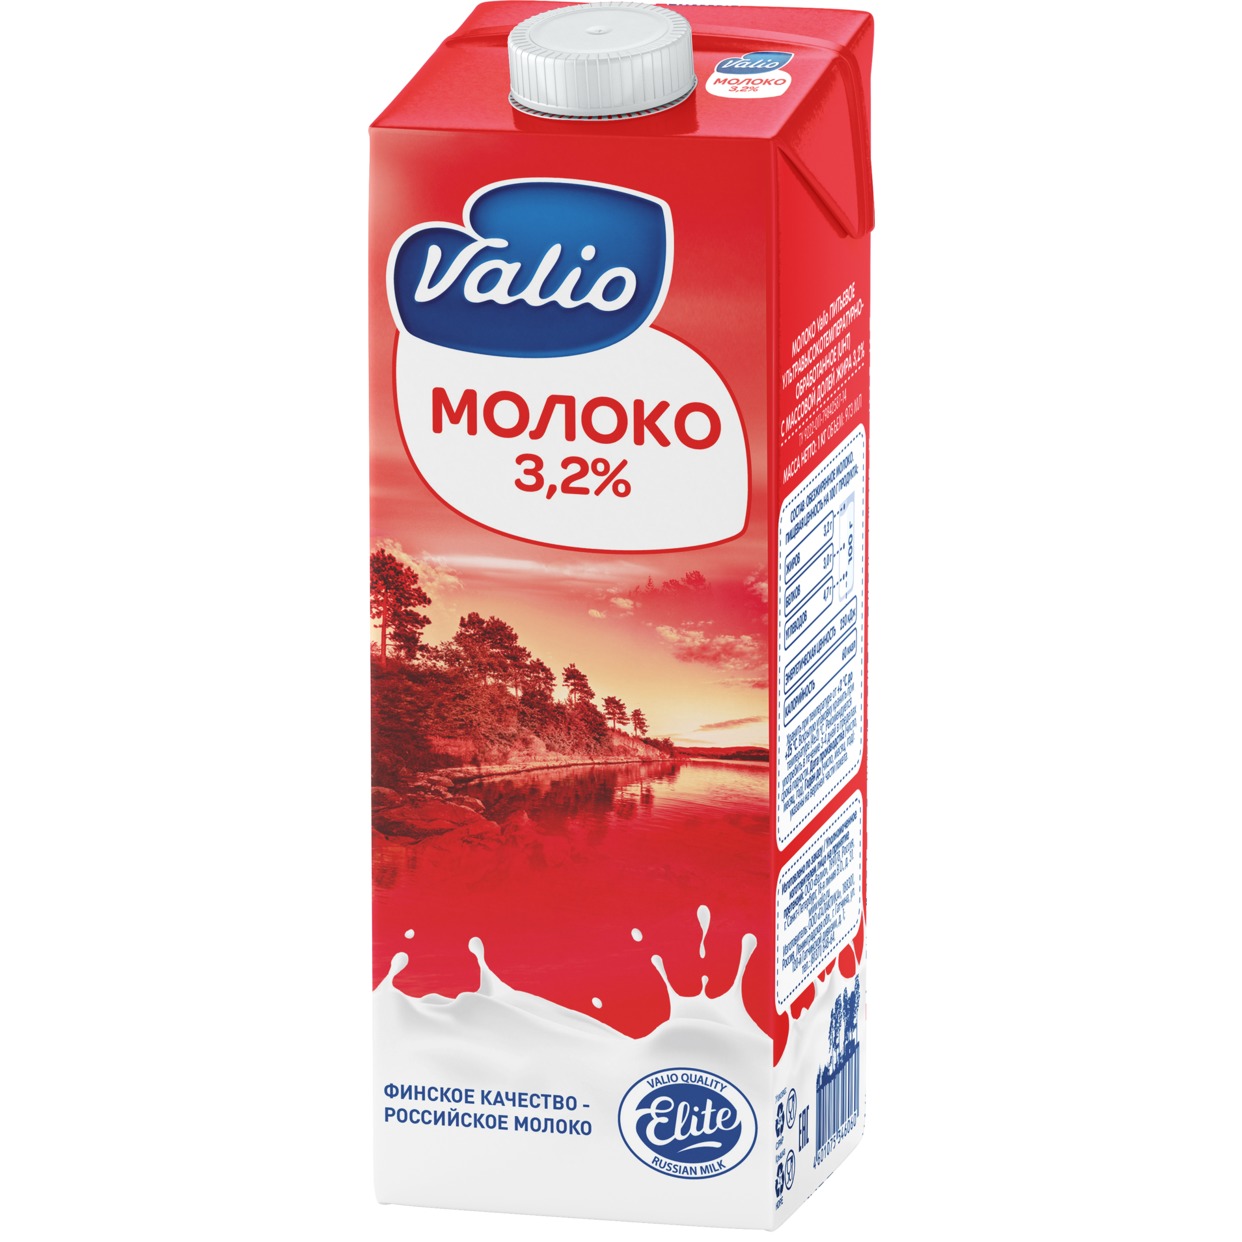 Молоко Valio ультрапастеризованное 3,2 % 1 л по акции в Пятерочке